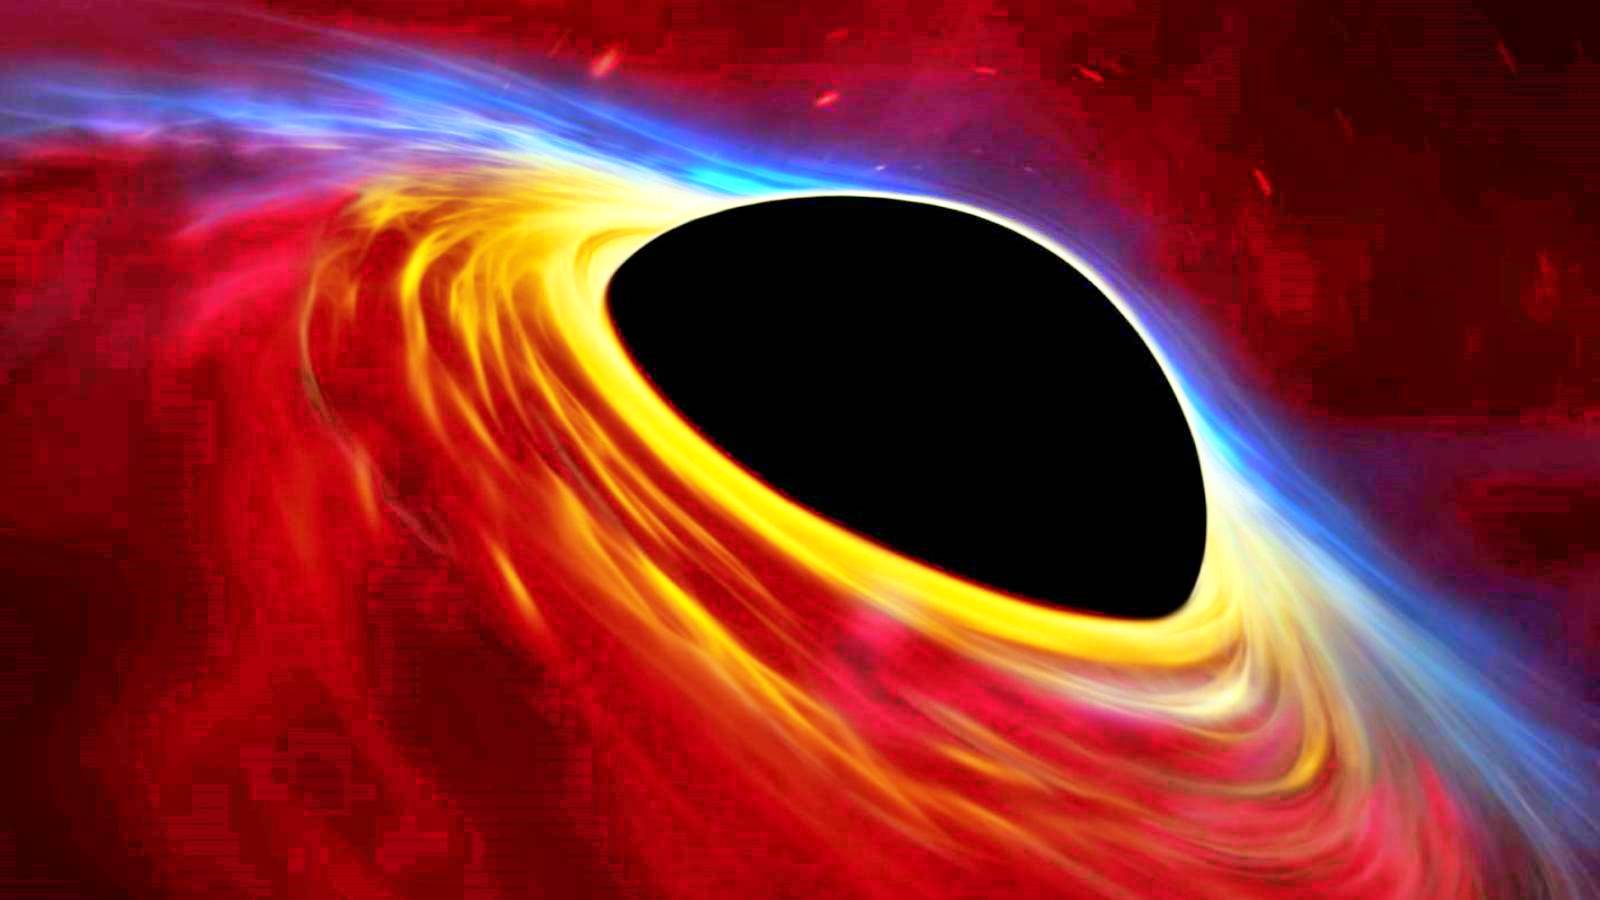 L’INCROYABLE trou noir a impressionné les gens La science révèle le secret de l’univers